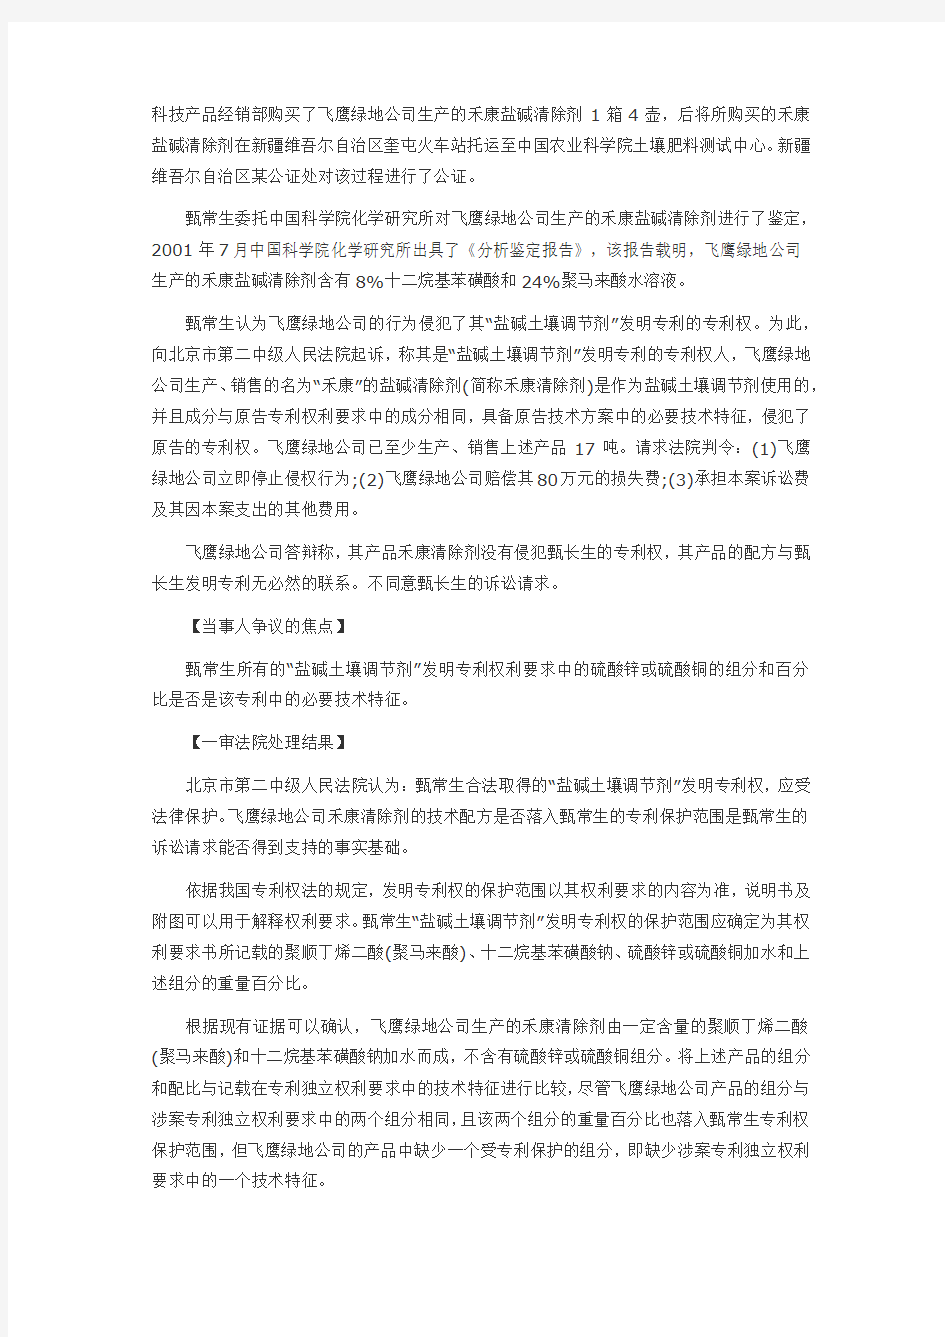 甄常生与北京飞鹰绿地科技发展有限公司专利侵权纠纷案